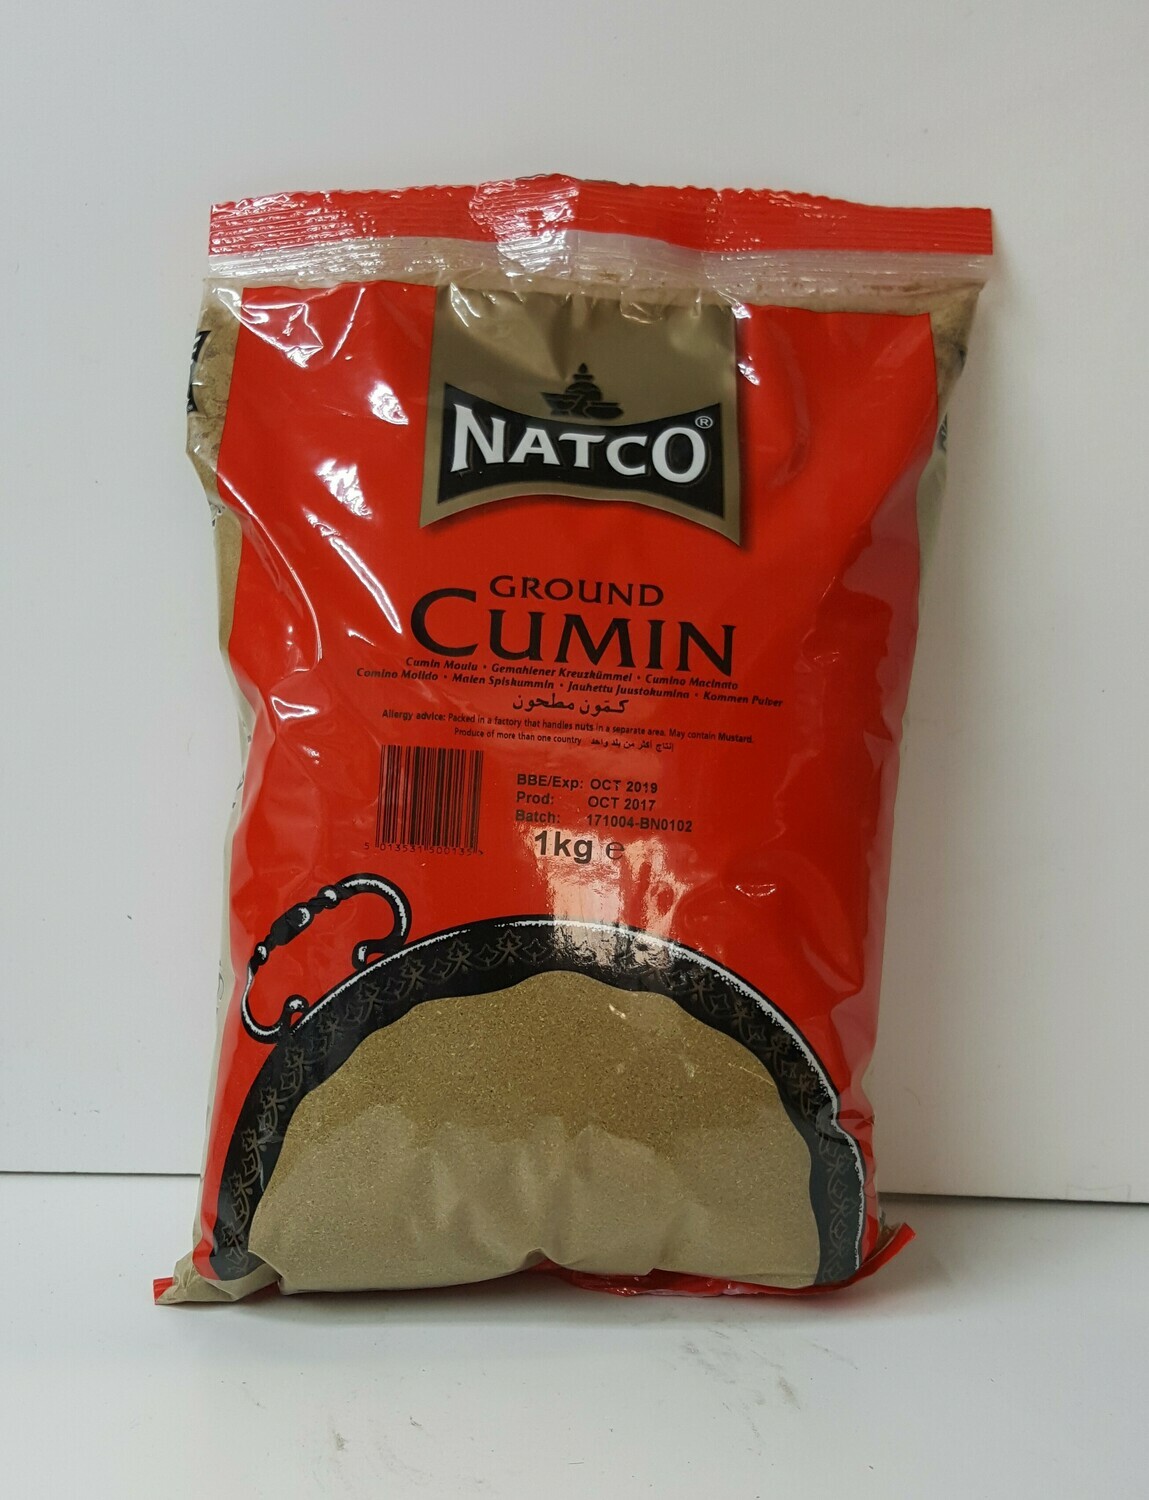 Ground Cumin NATCO 1Kg